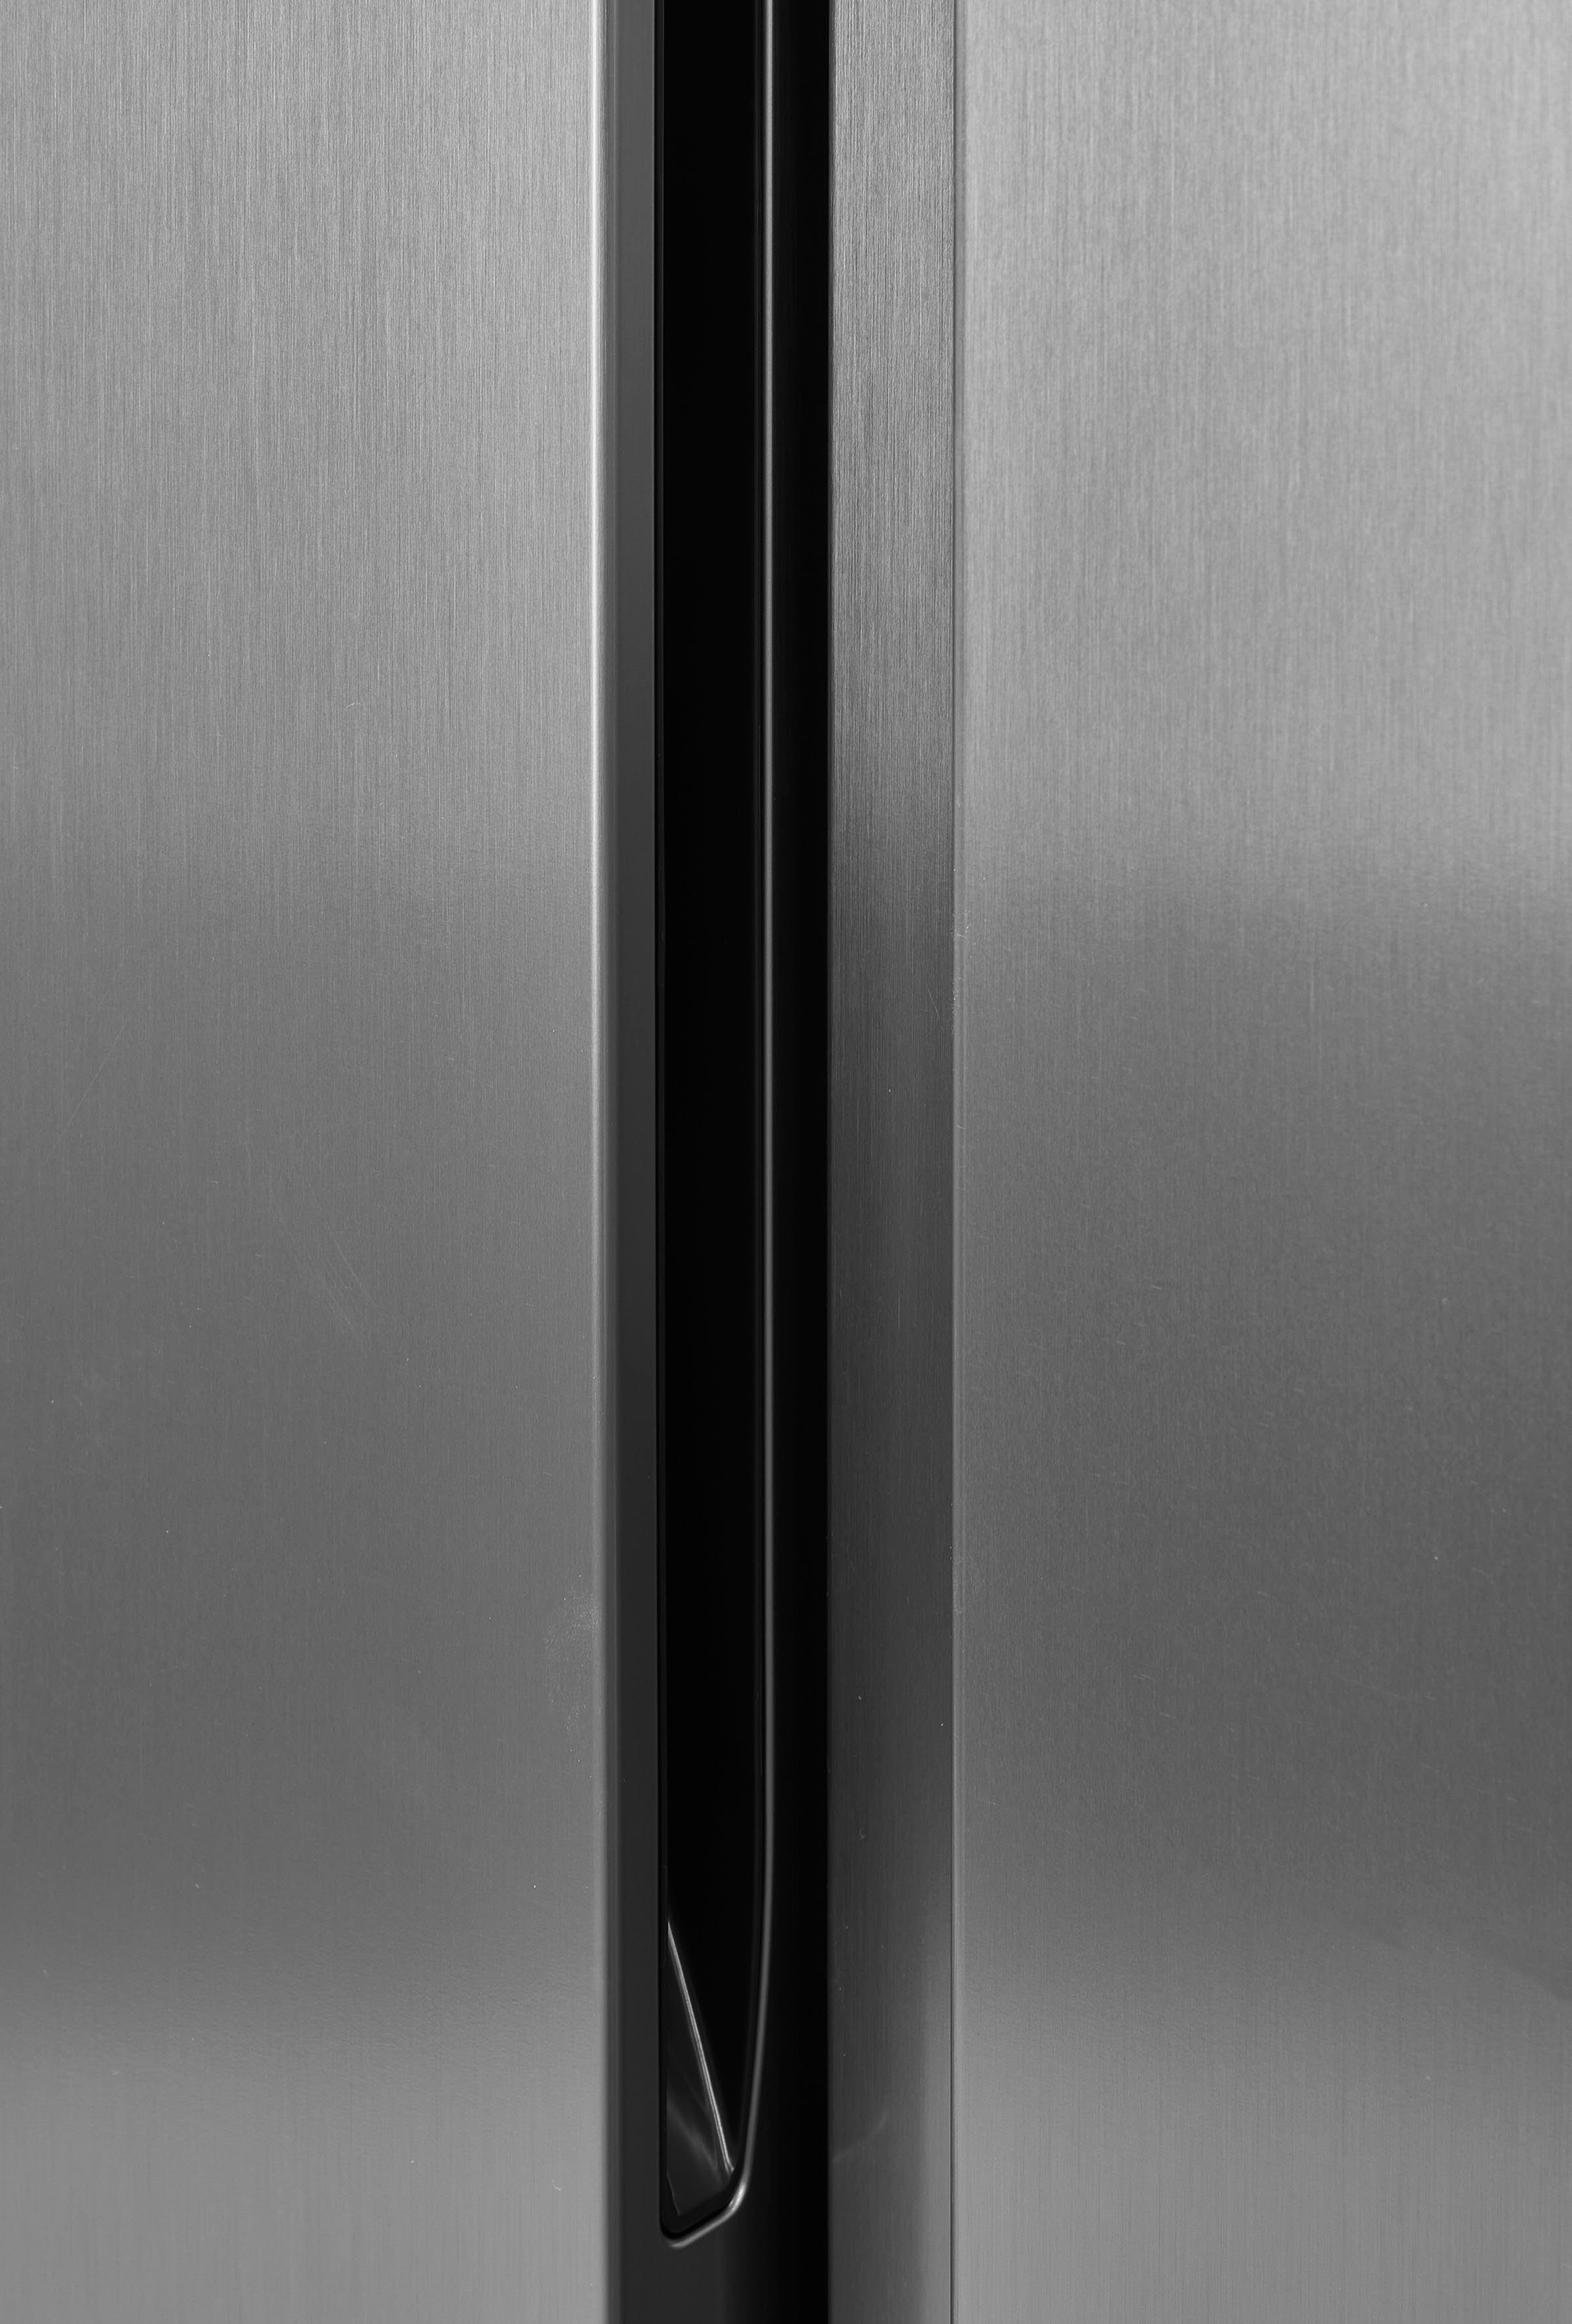 grau Side-by-Side hoch, 178,6 cm RS677N4ACC, 91 Hisense cm breit